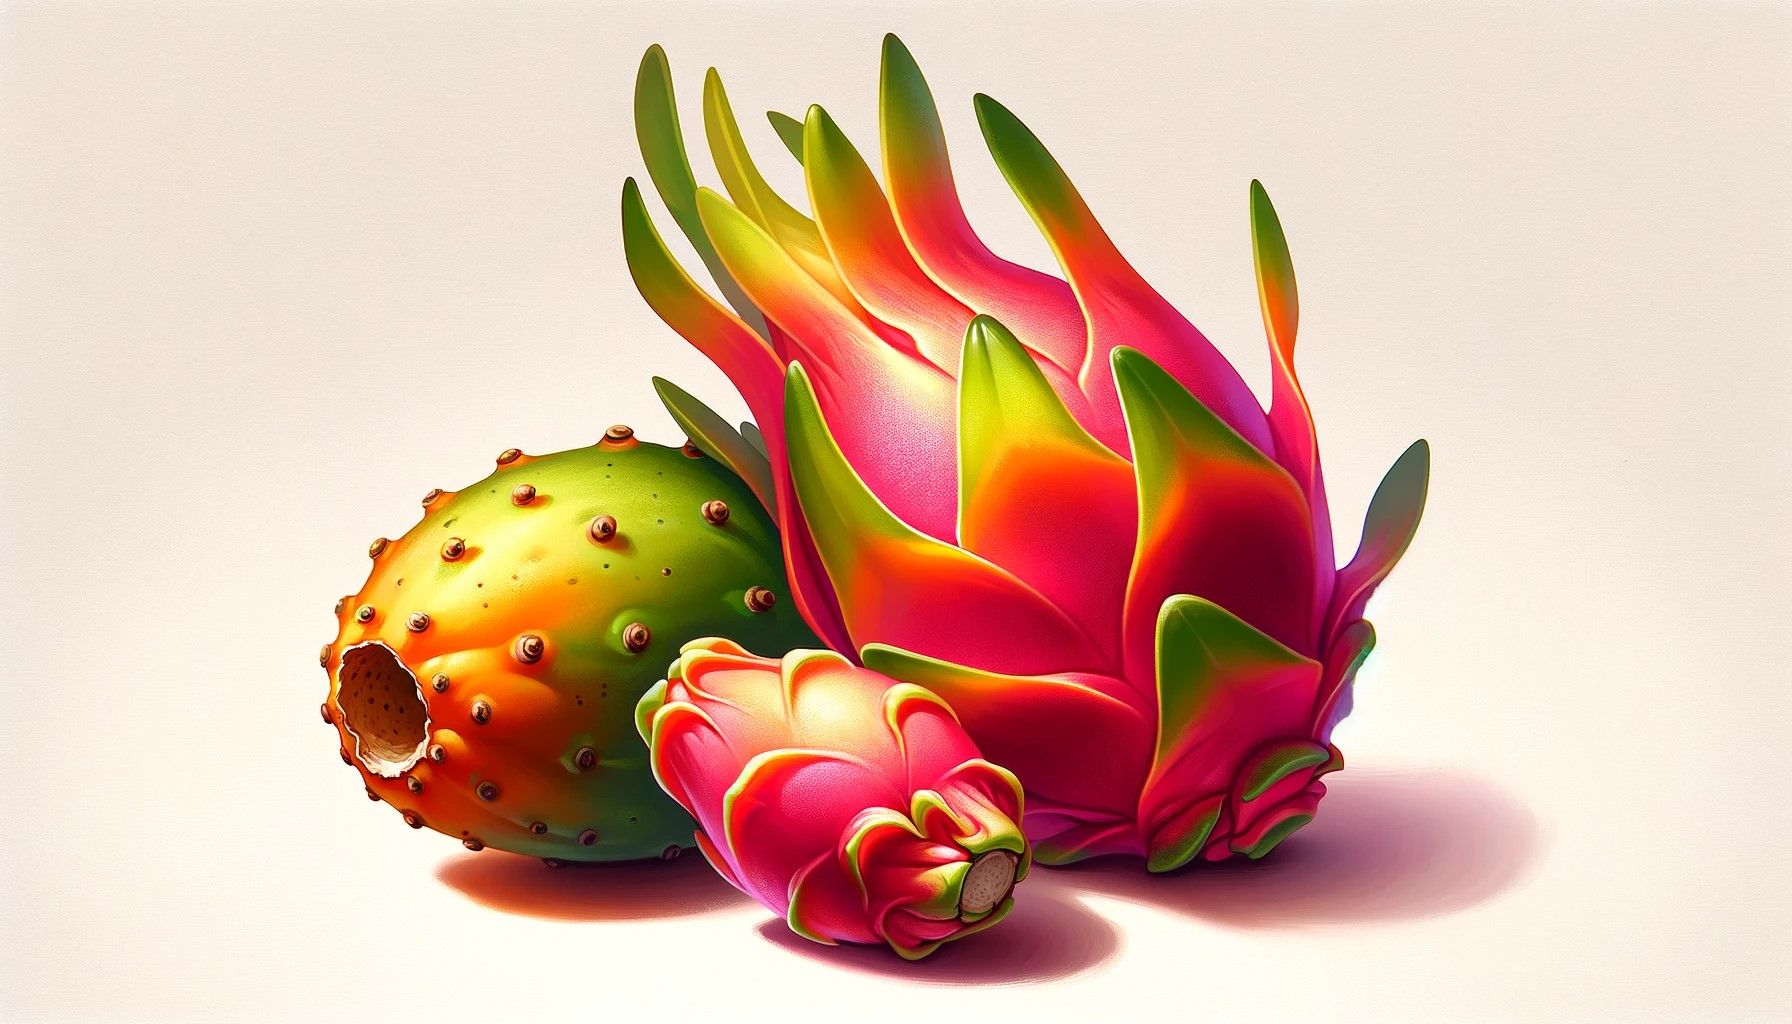 An illustration of a pitahaya and a pitaya